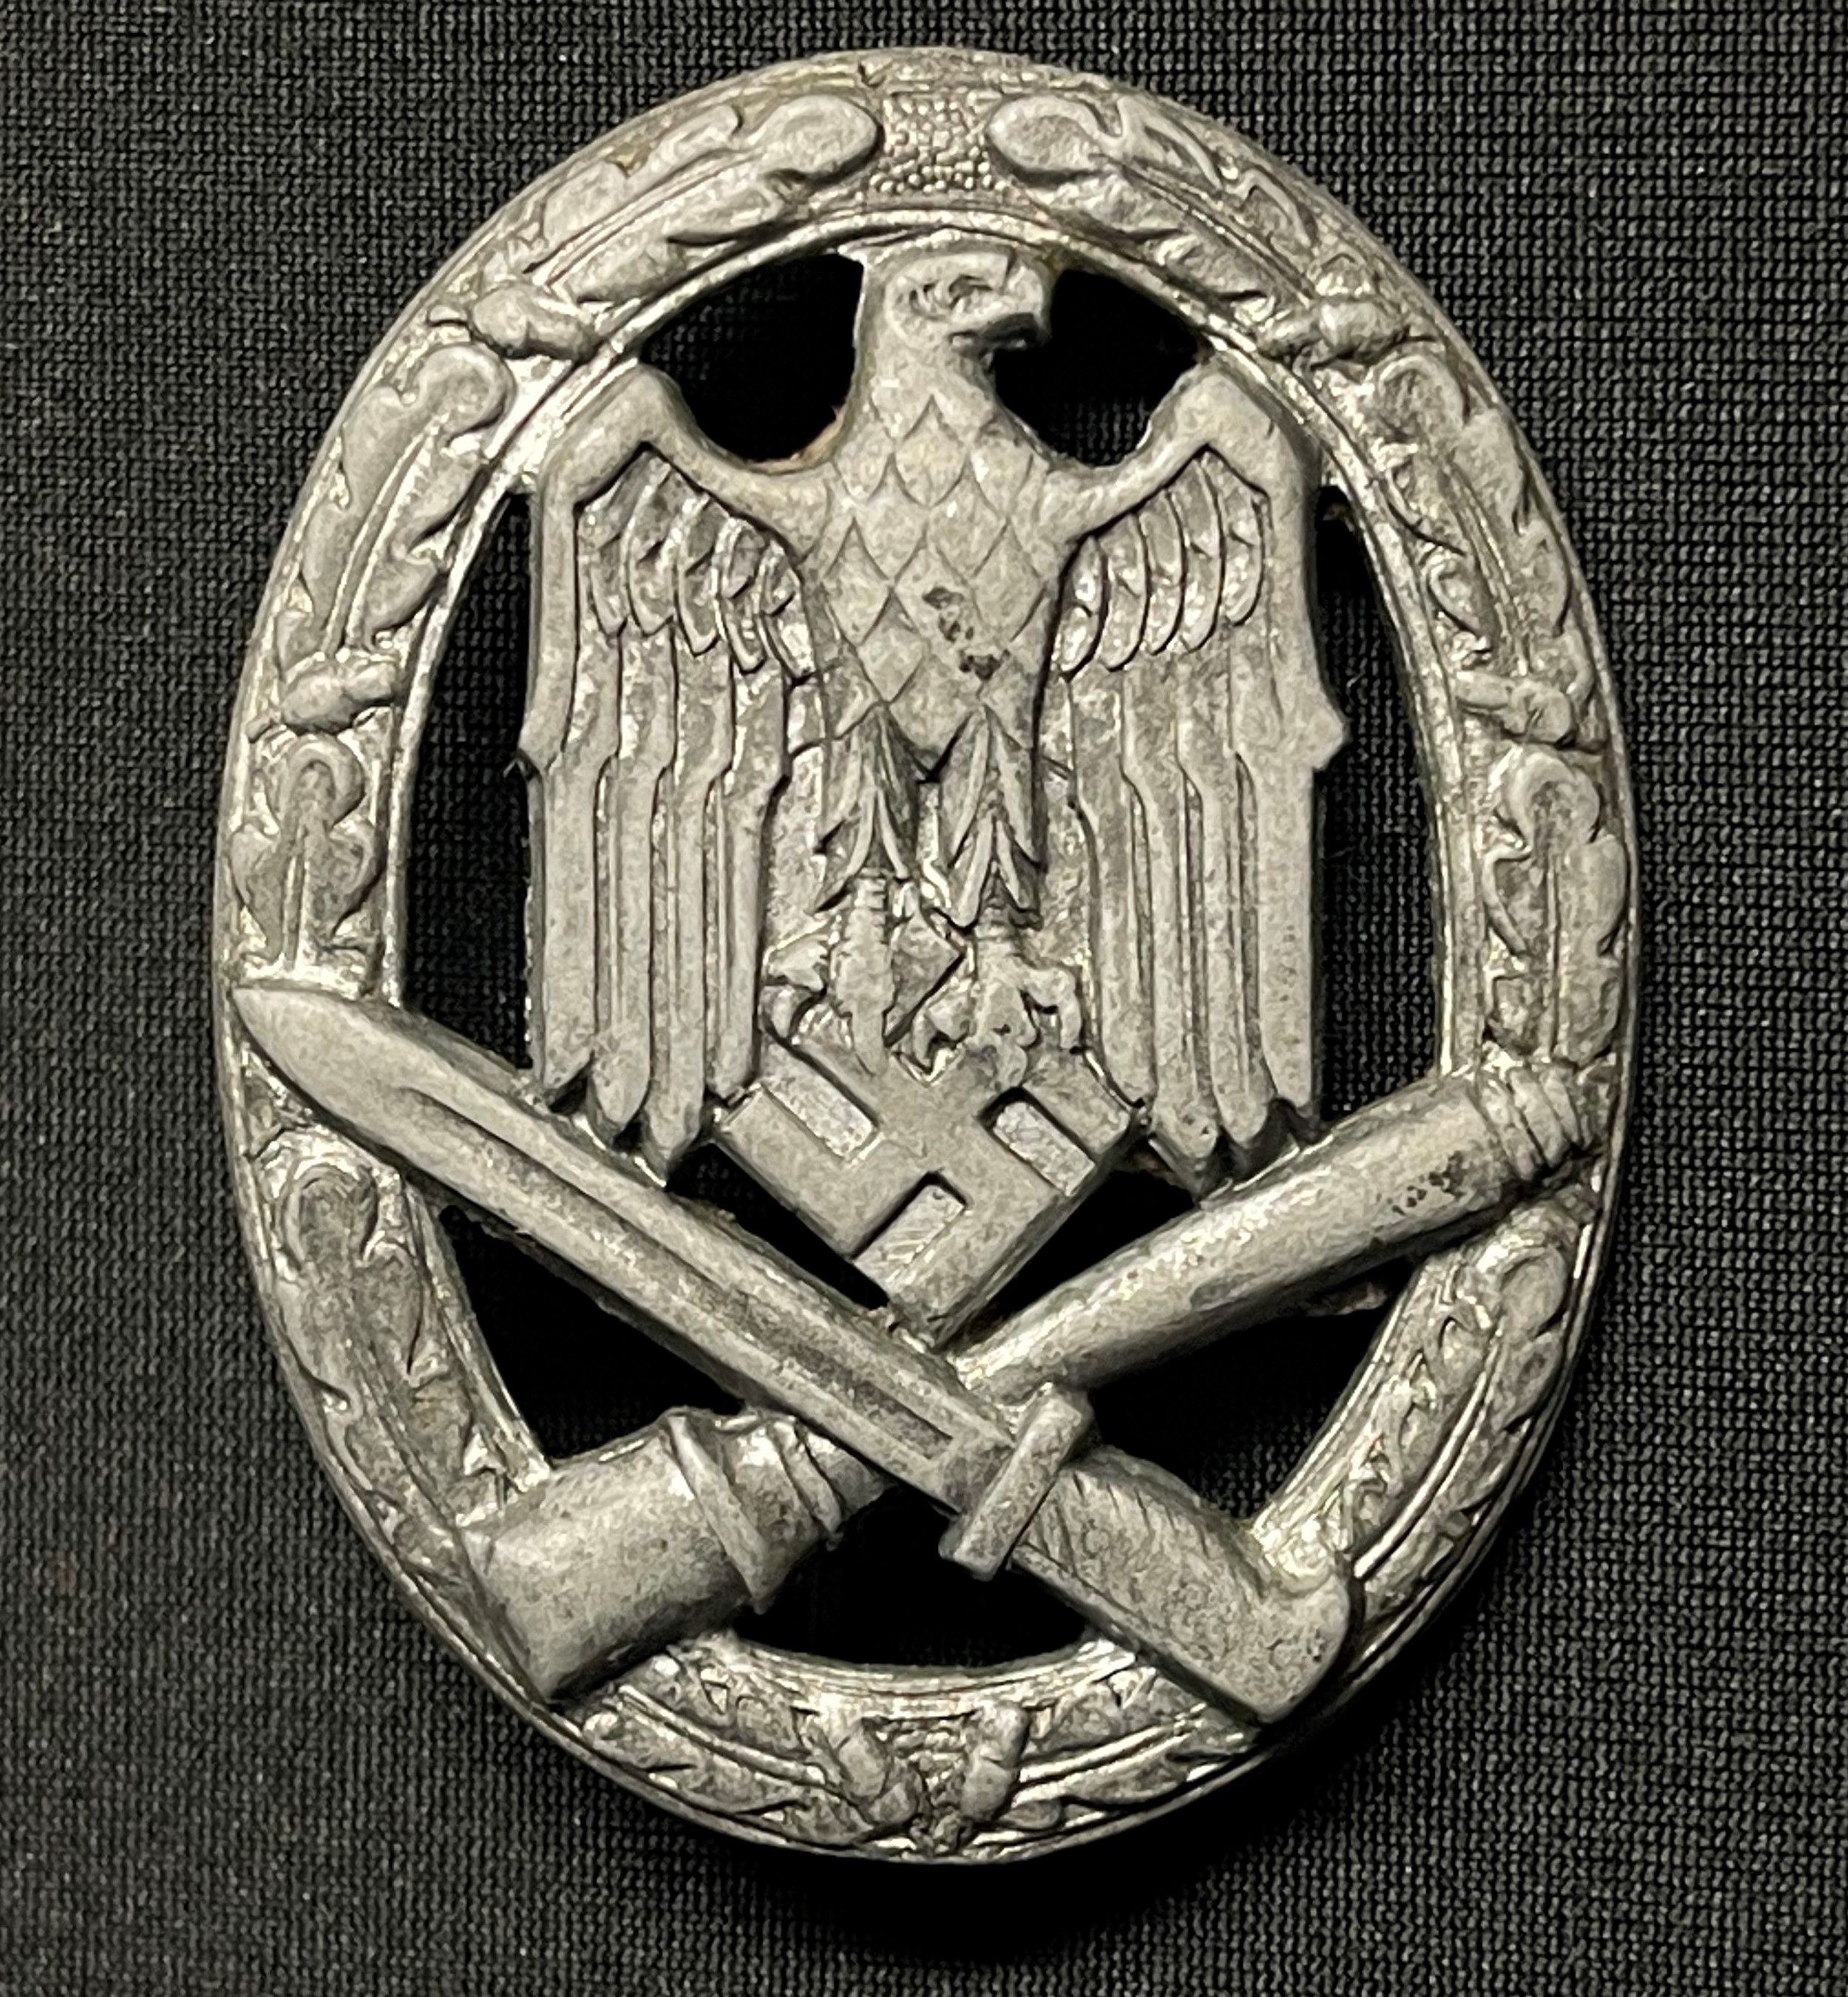 WW2 Third Reich Allgemeines Sturmabzeichen - General Assault Badge. Zink. Ball hinge. No makers